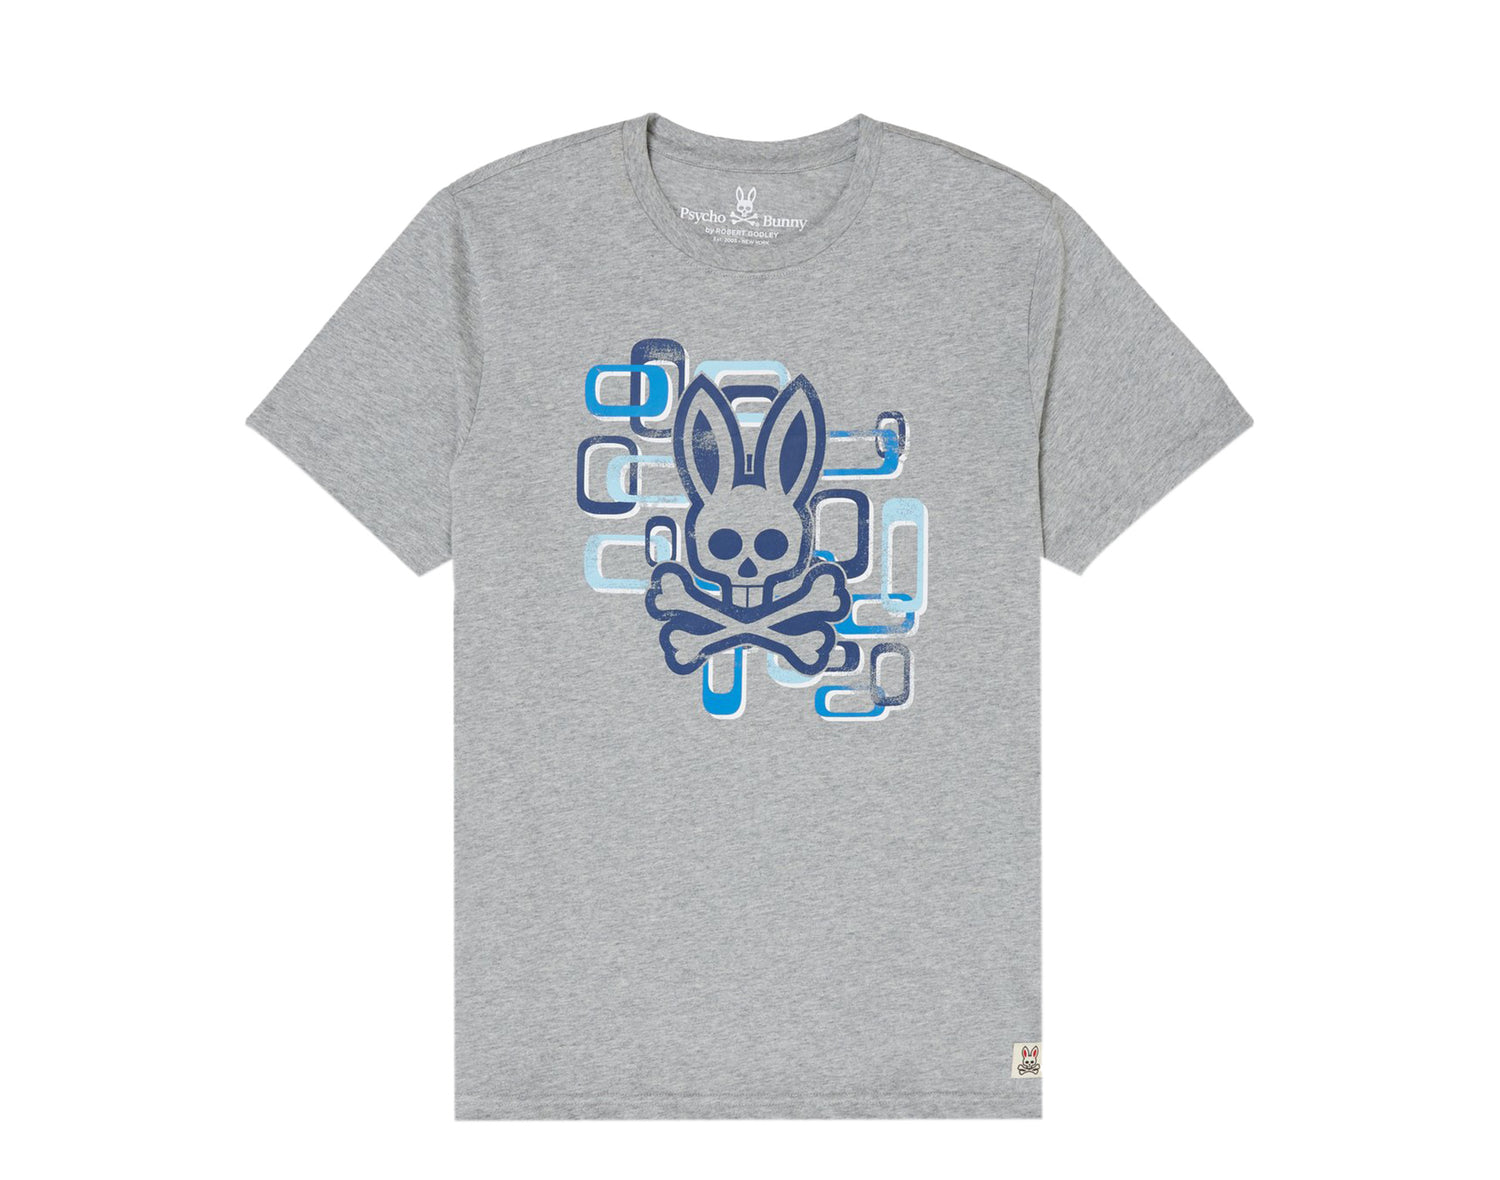 Psycho Bunny Dorset Graphic Men's Tee Shirt